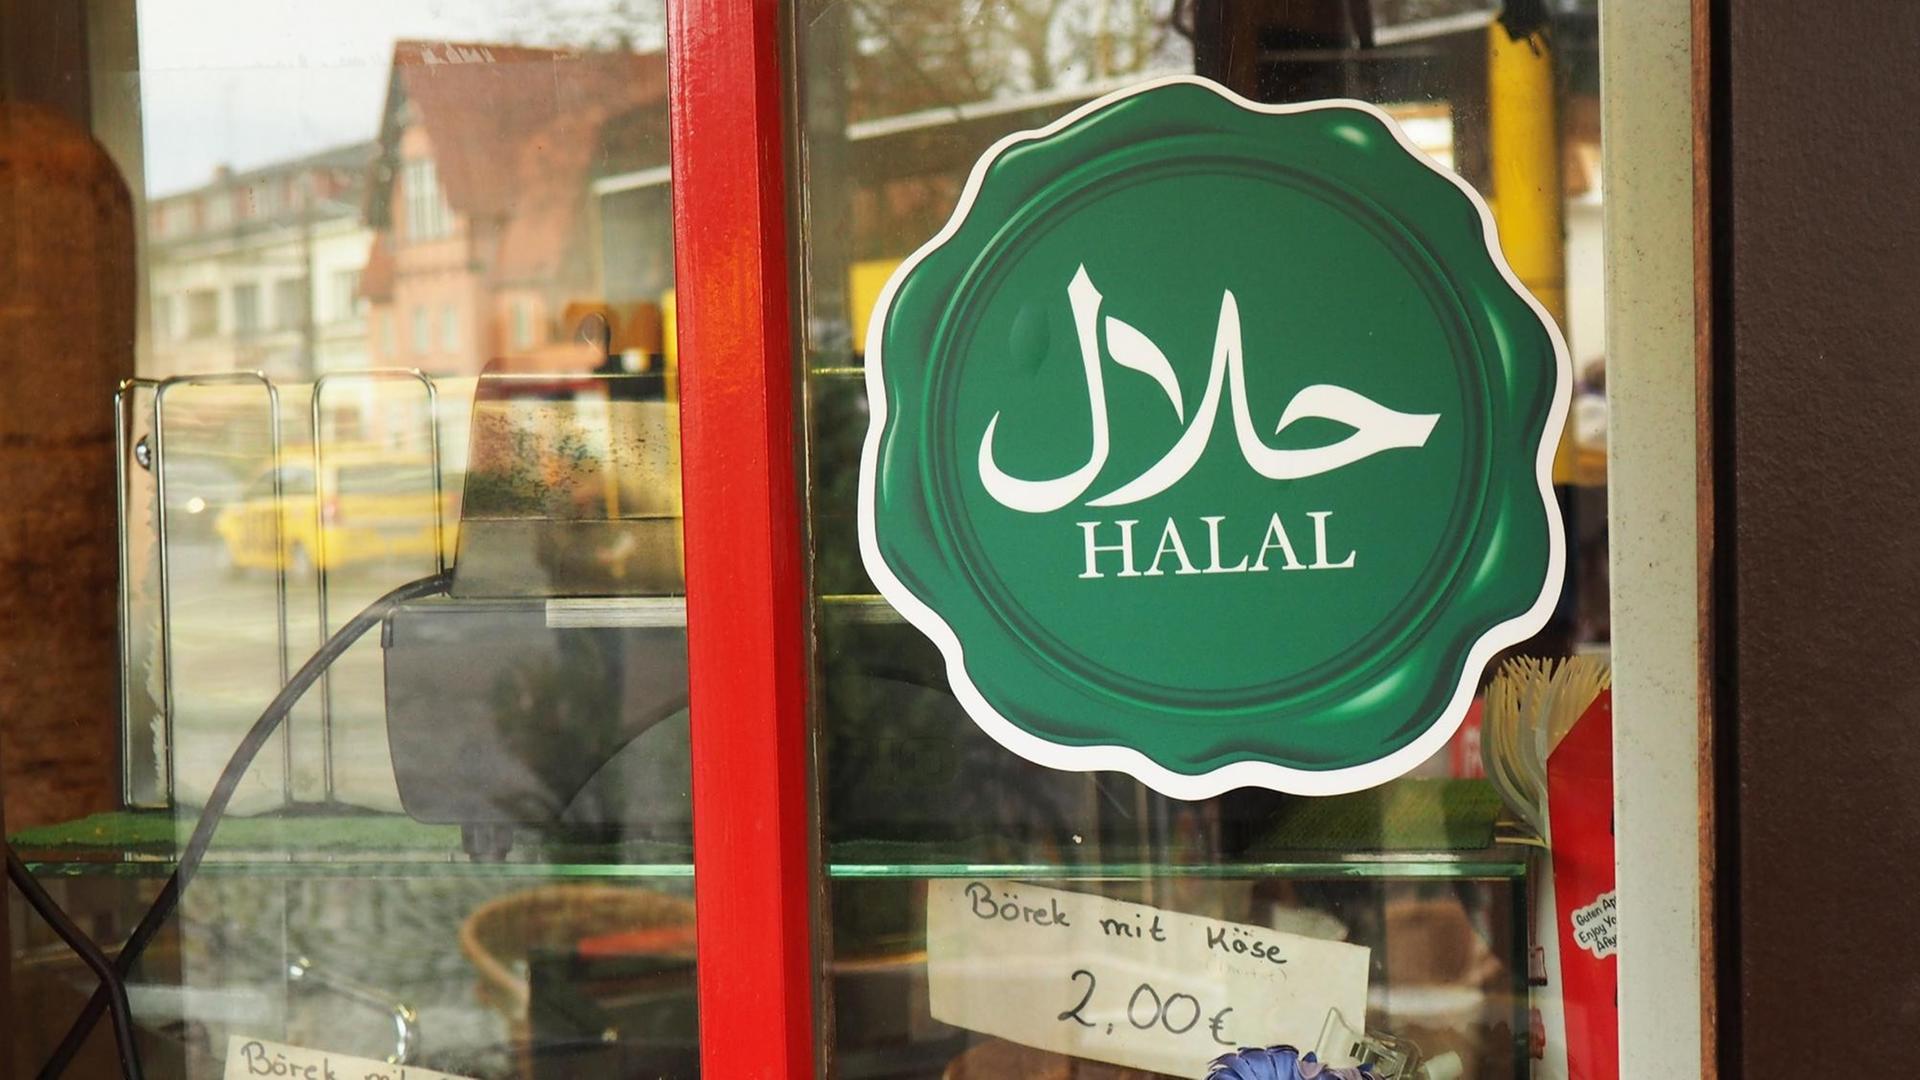 Ein grüner Aufkleber mit dem Wort "Halal" ist an einer Dönerbude in Berlin zu sehen.